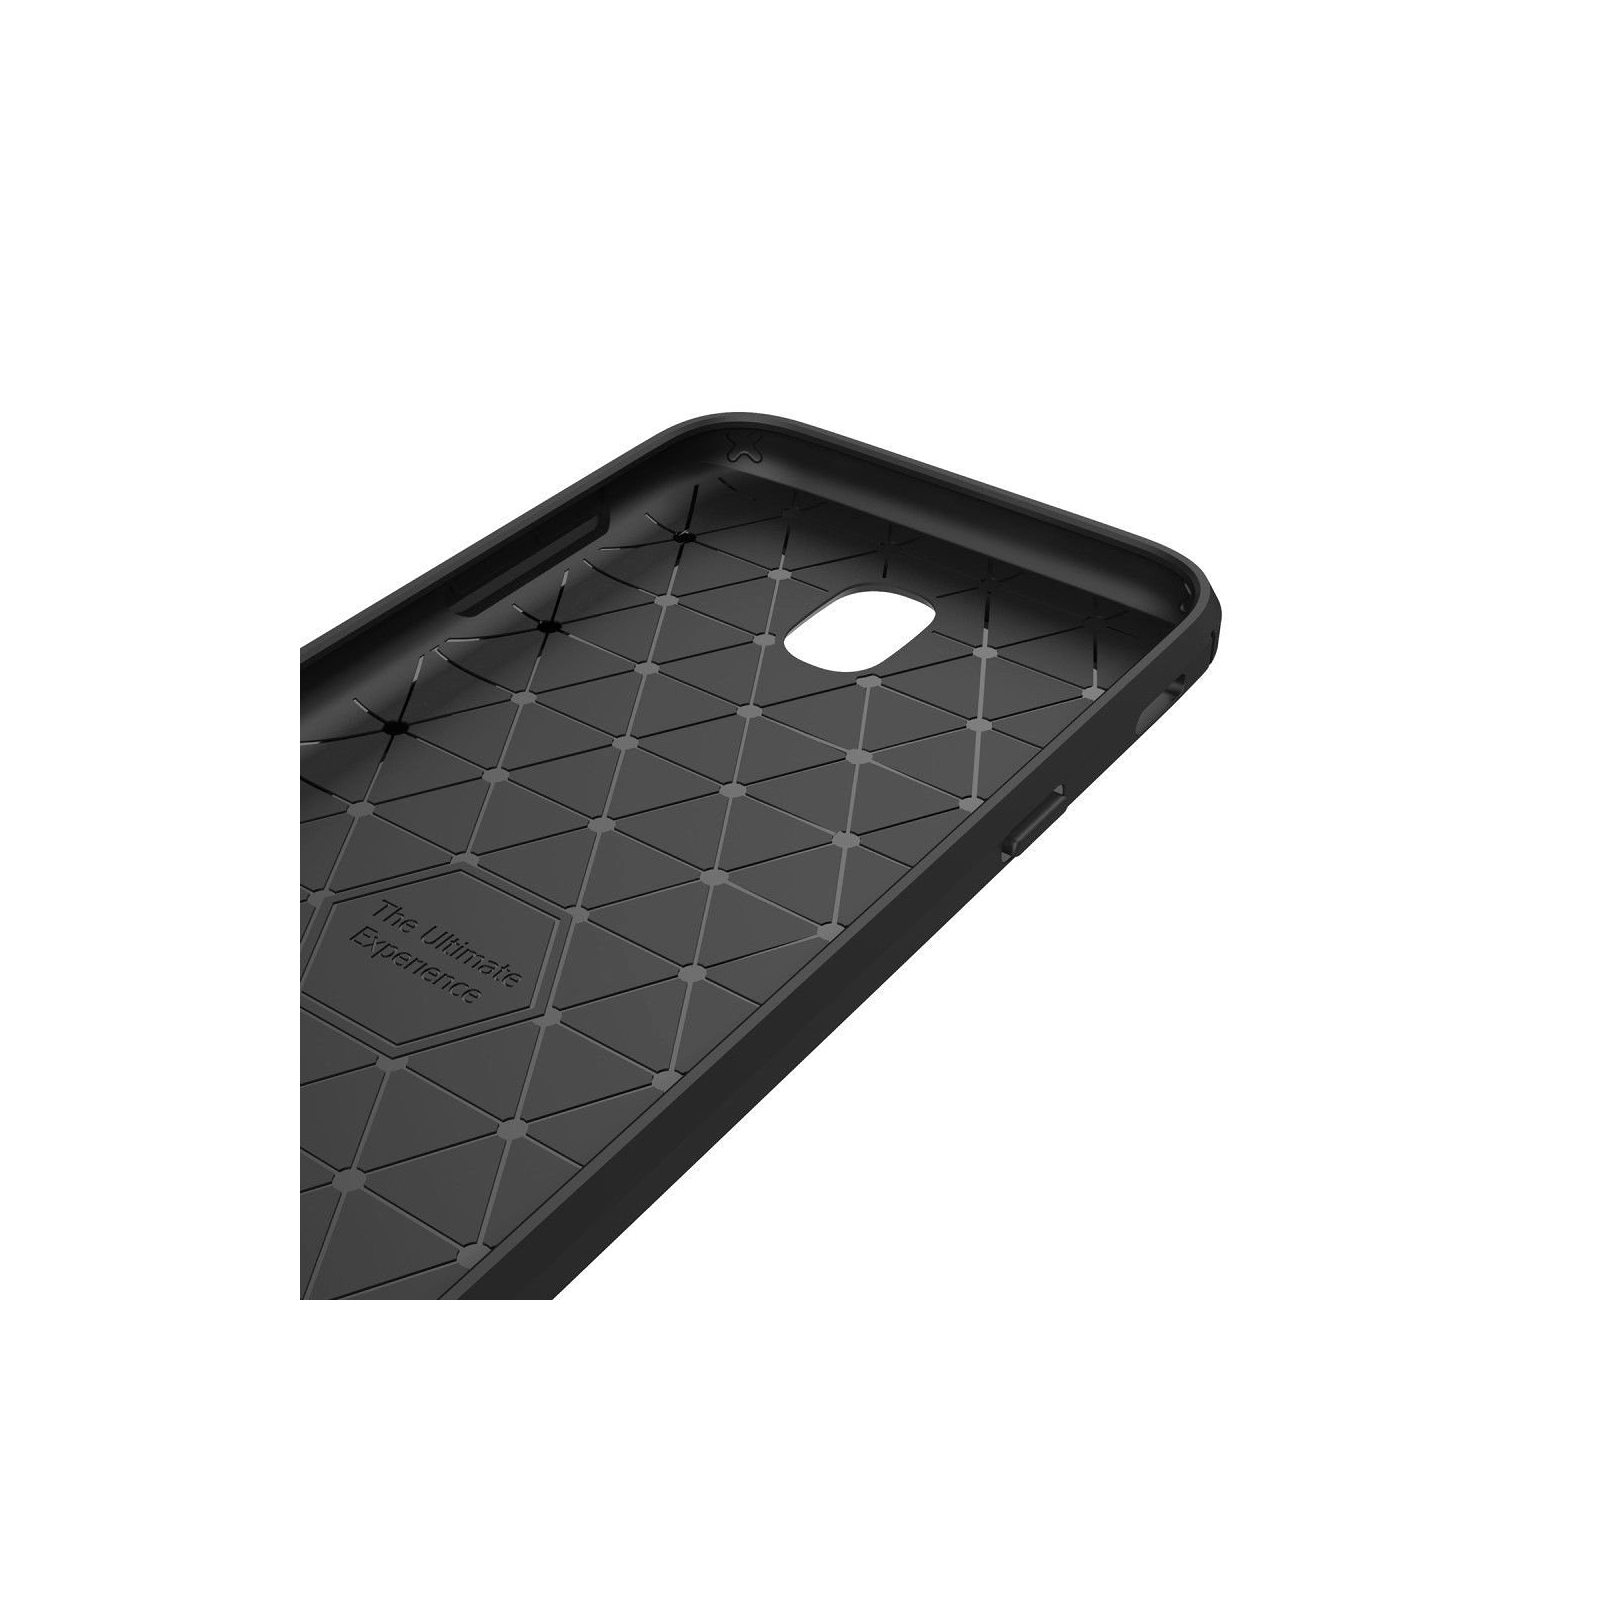 Чохол до мобільного телефона для SAMSUNG Galaxy J7 2017 Carbon Fiber (Black) Laudtec (LT-J72017B) зображення 3